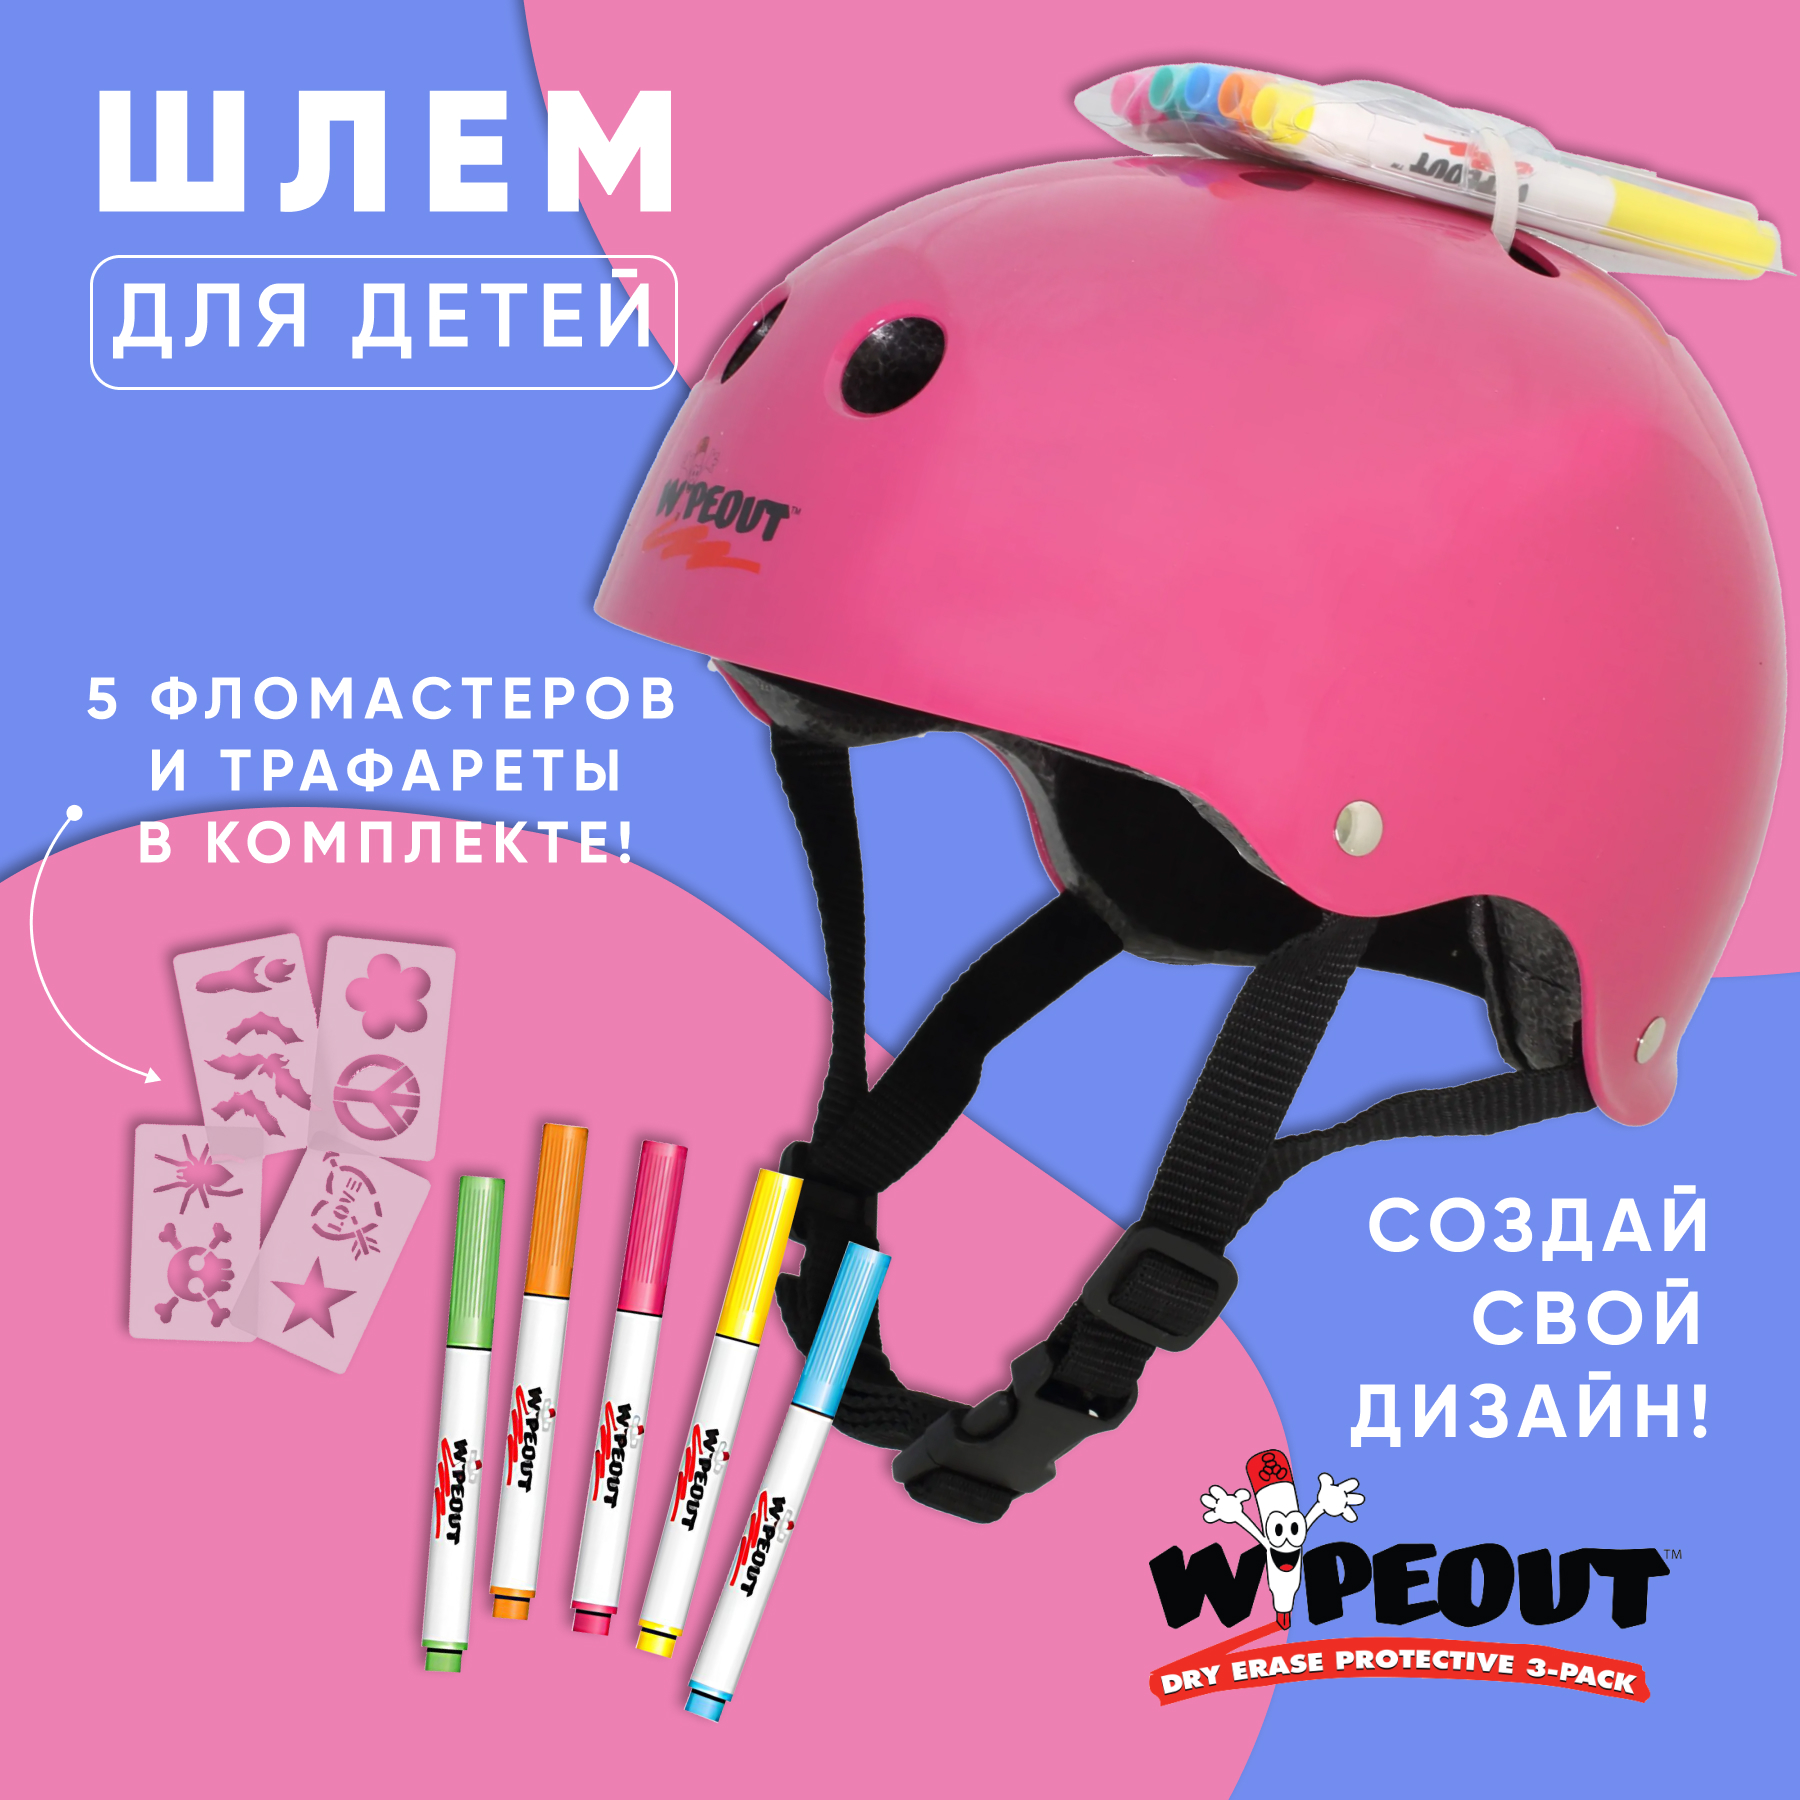 Шлем защитный спортивный WIPEOUT Neon Pink с фломастерами и трафаретами размер M 5+ обхват головы 49-52 см - фото 2